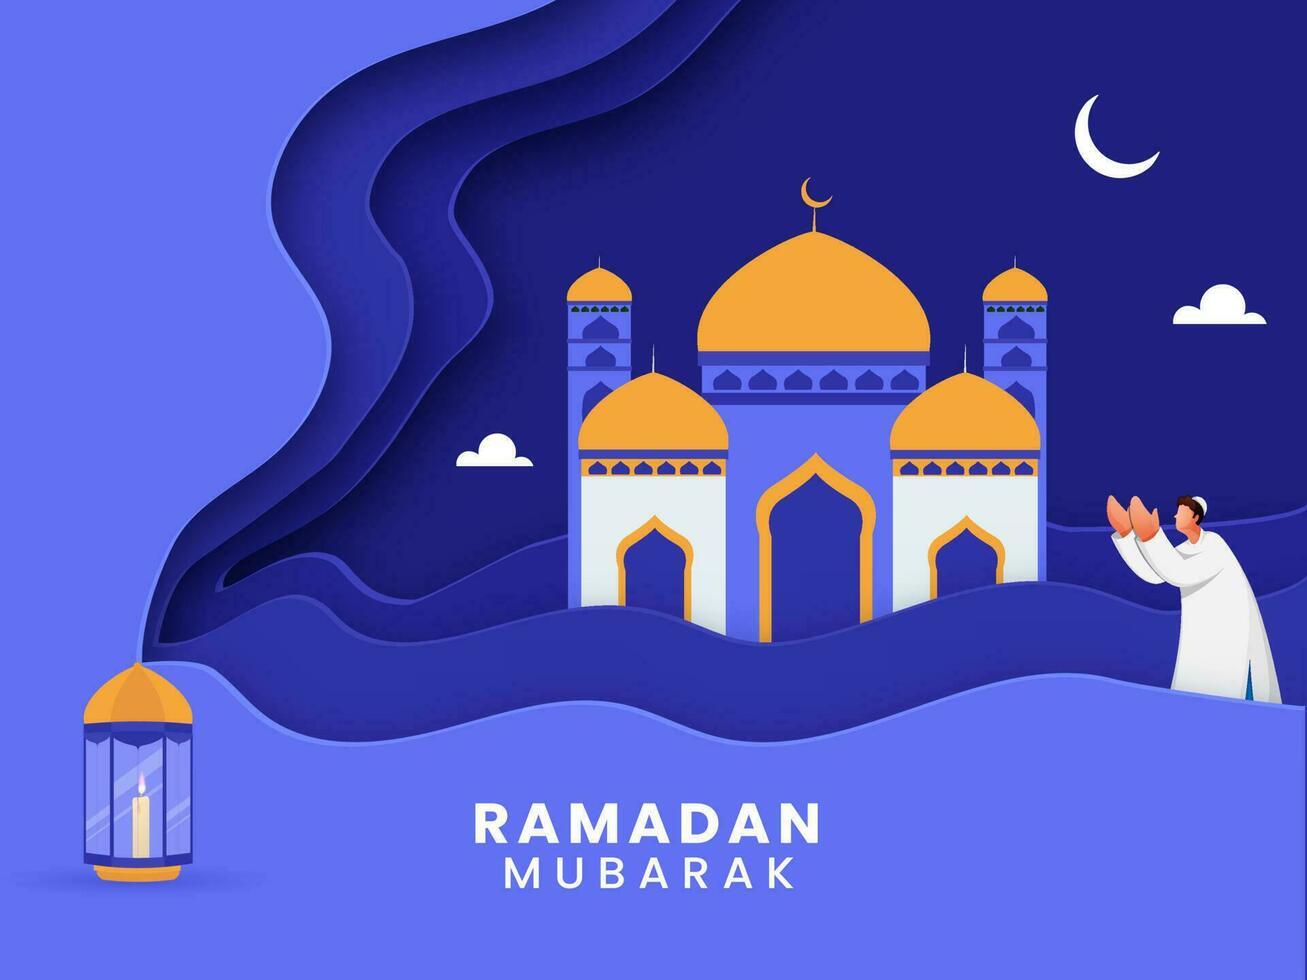 ramadan mubarak begrepp med muslim man erbjudande Namaz, belyst lykta, halvmåne måne och moské på blå papper lager skära bakgrund. vektor